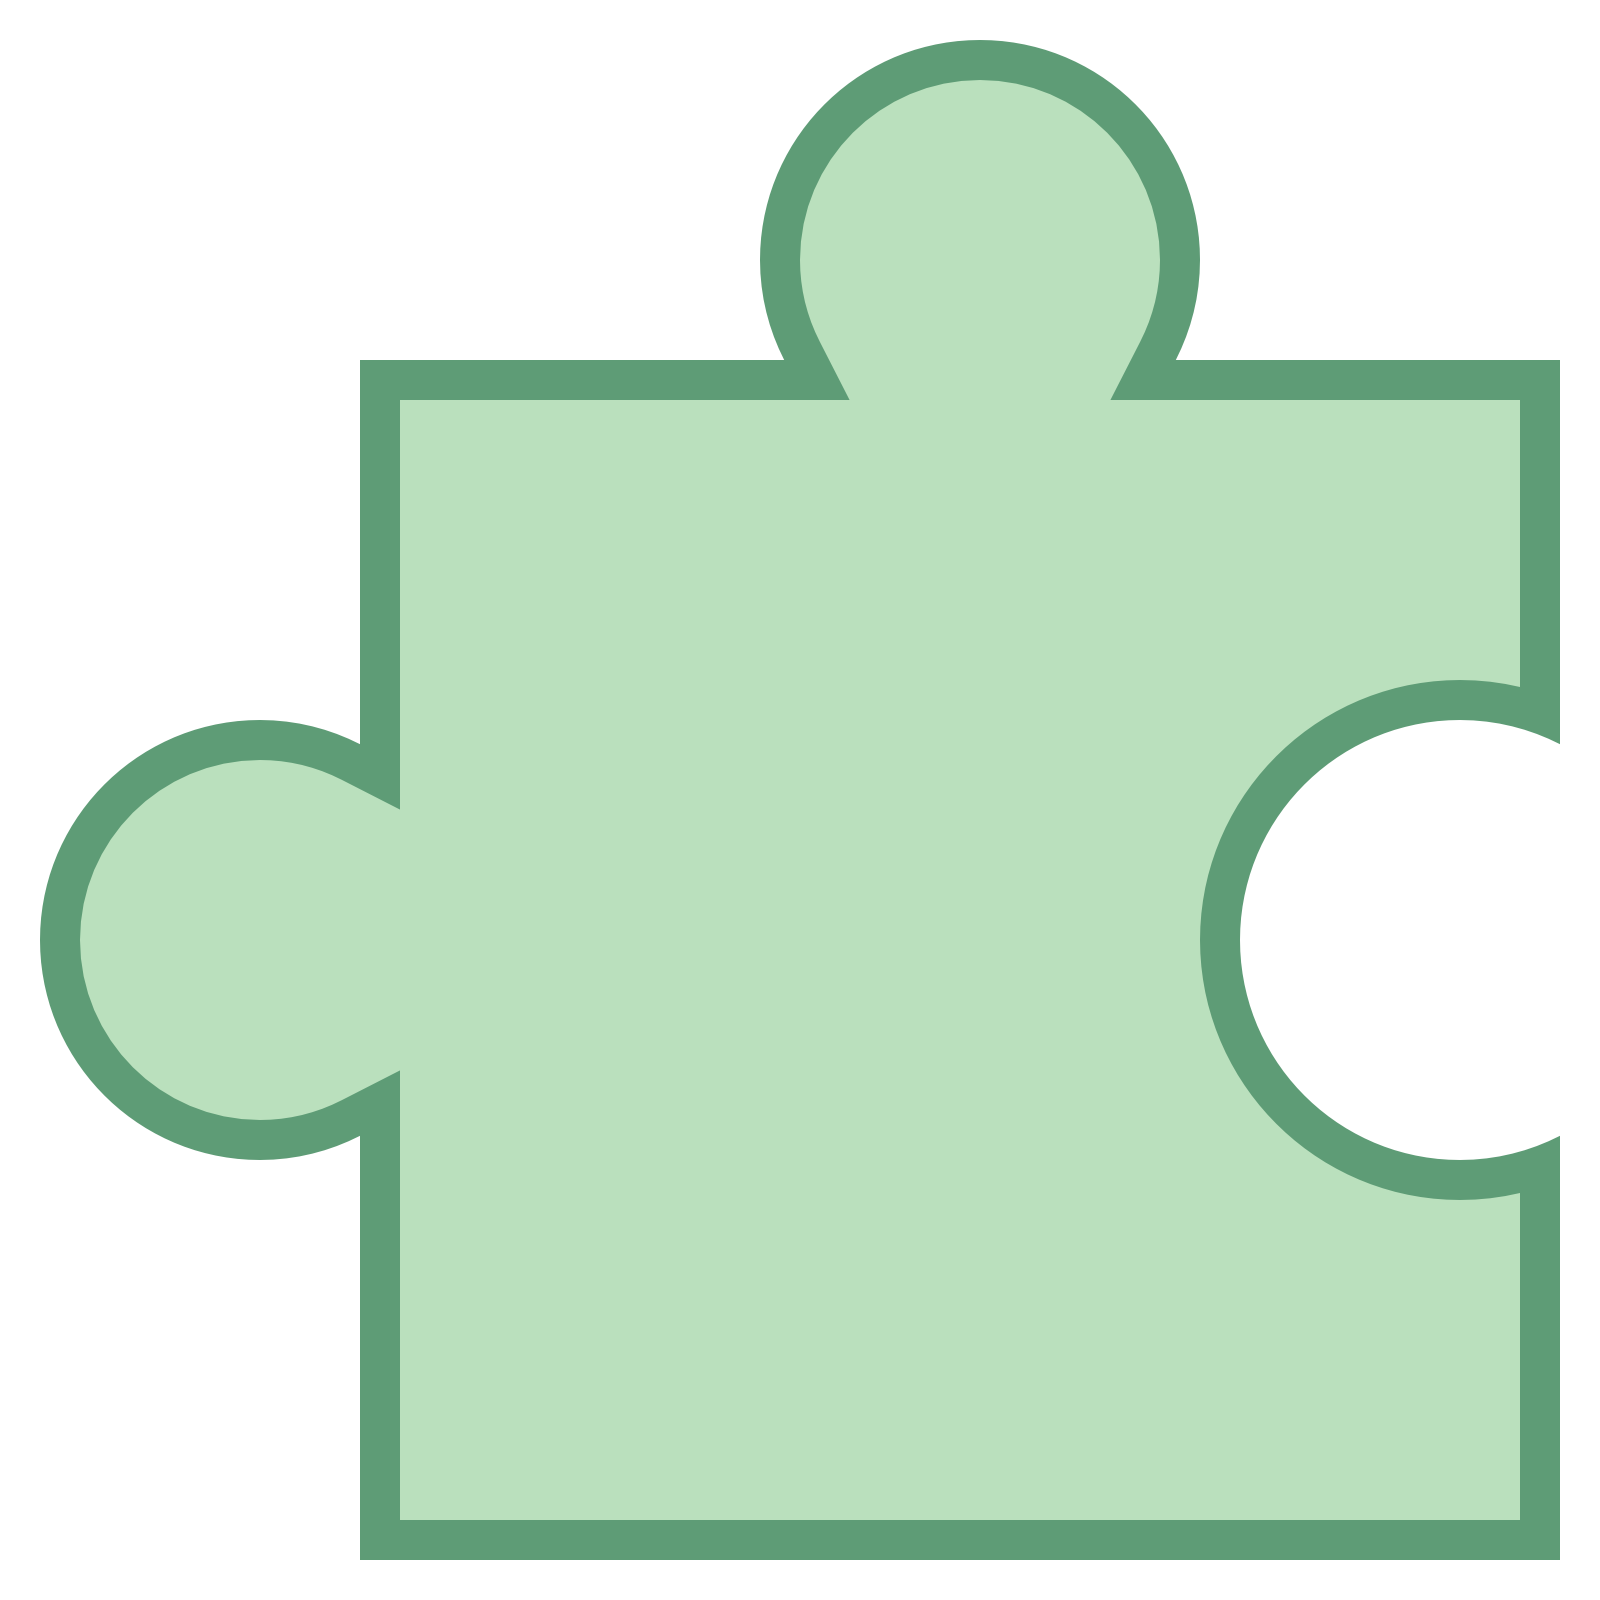 Green,Clip art,Symbol